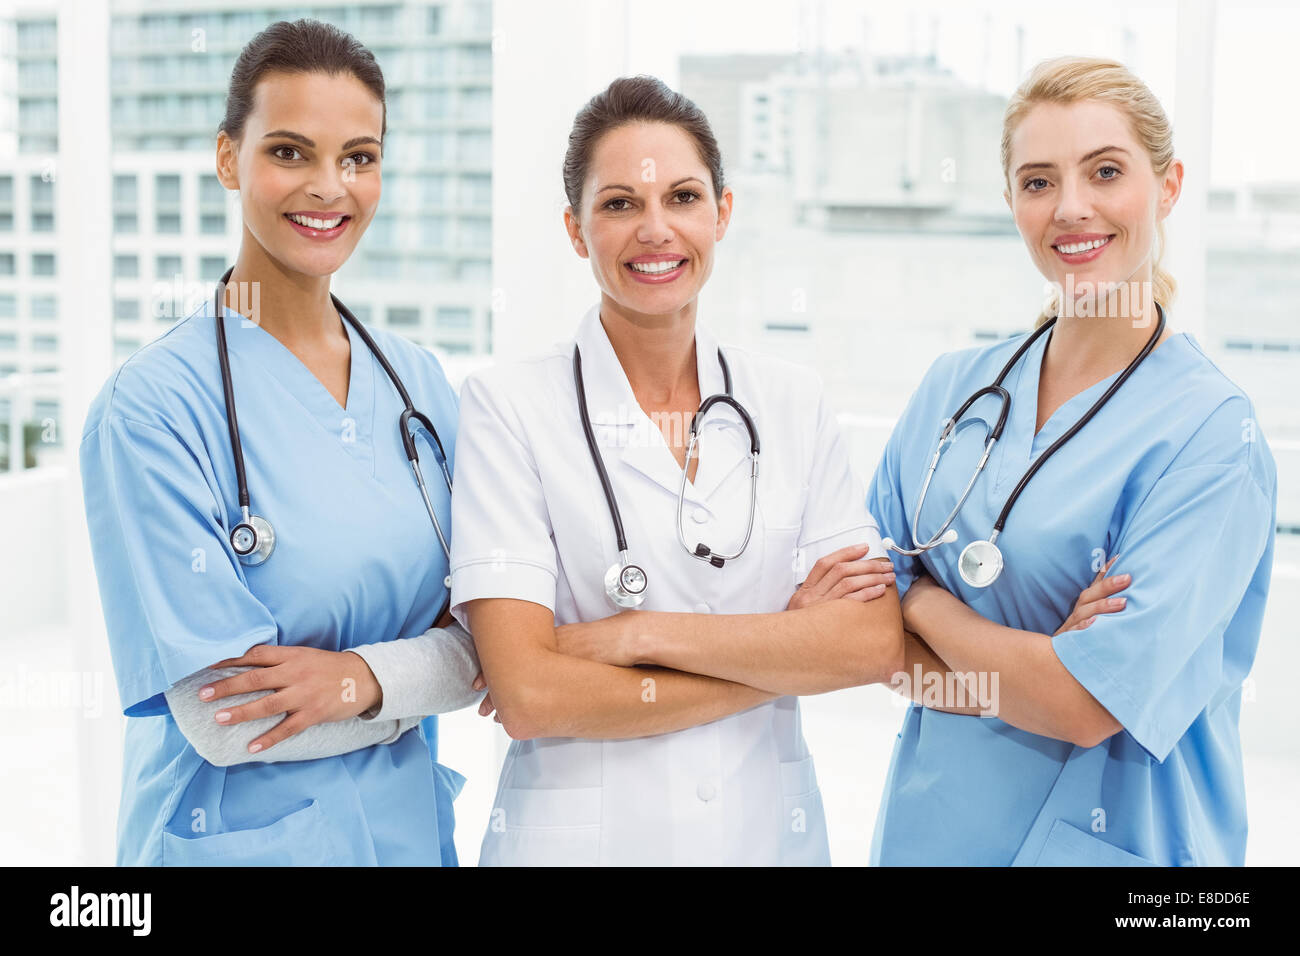 Retrato de mujeres médicos con los brazos cruzados Foto de stock